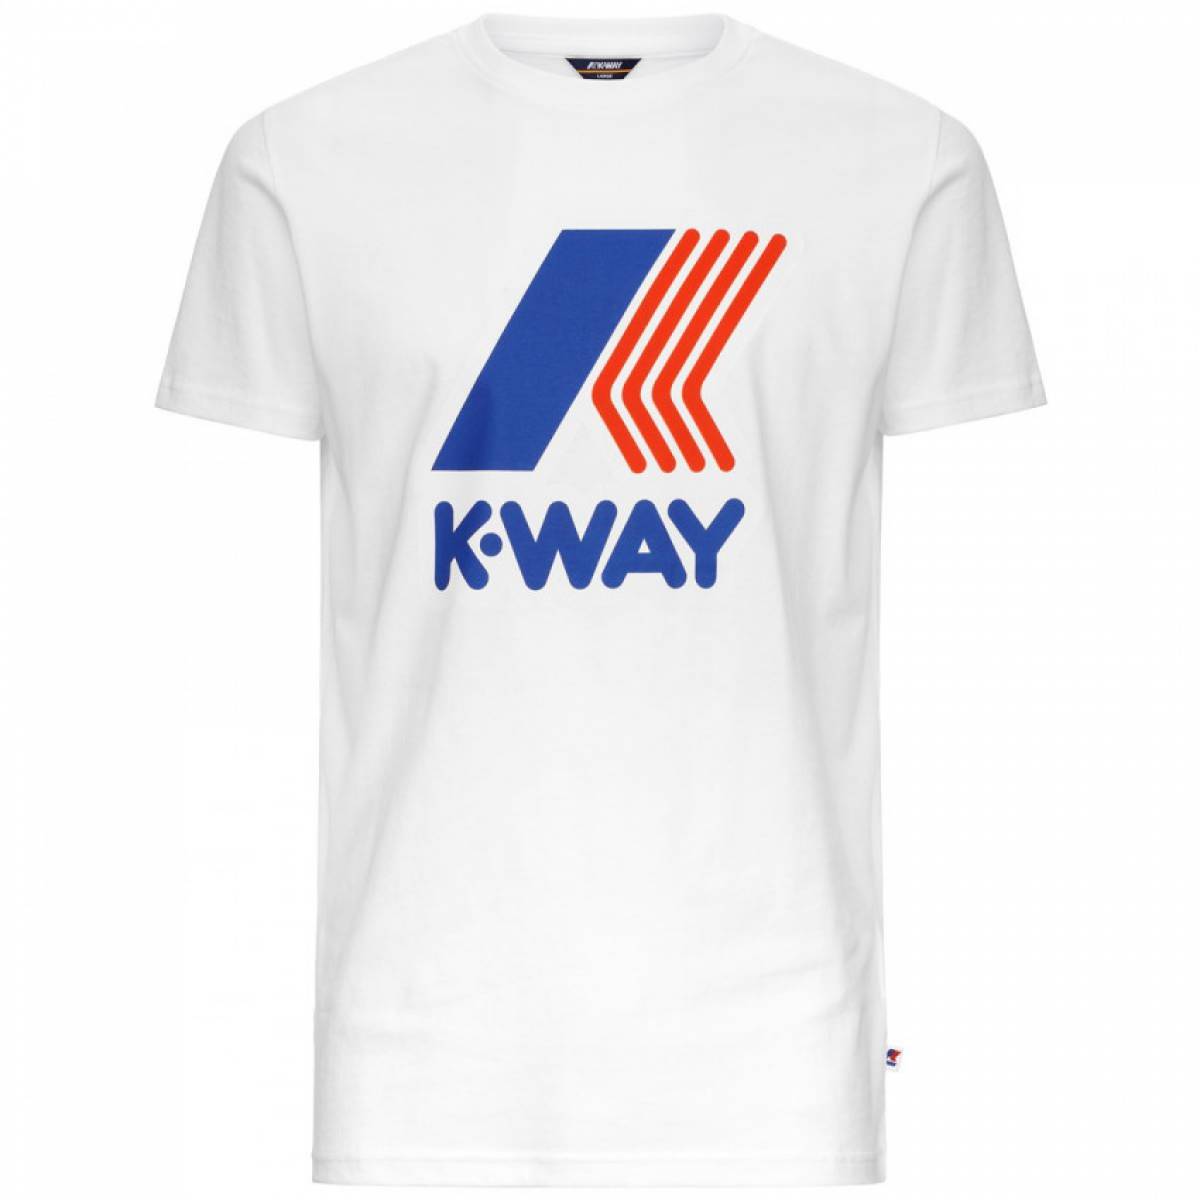 Acheter un T-shirt k-way à dieppe 76